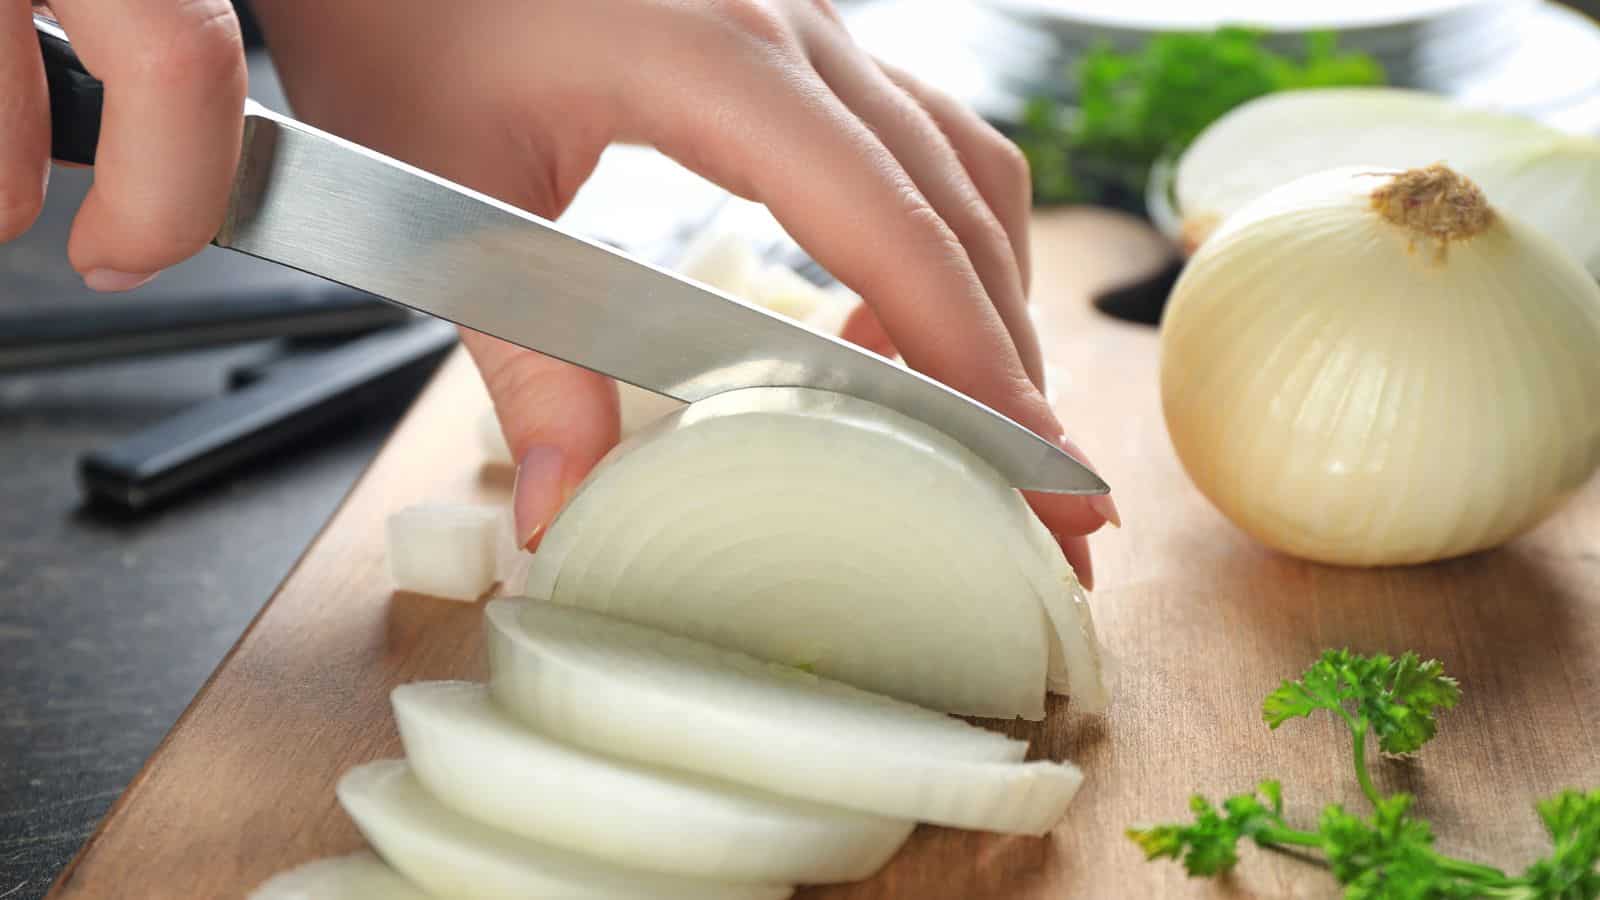 Woman cutting white onion.